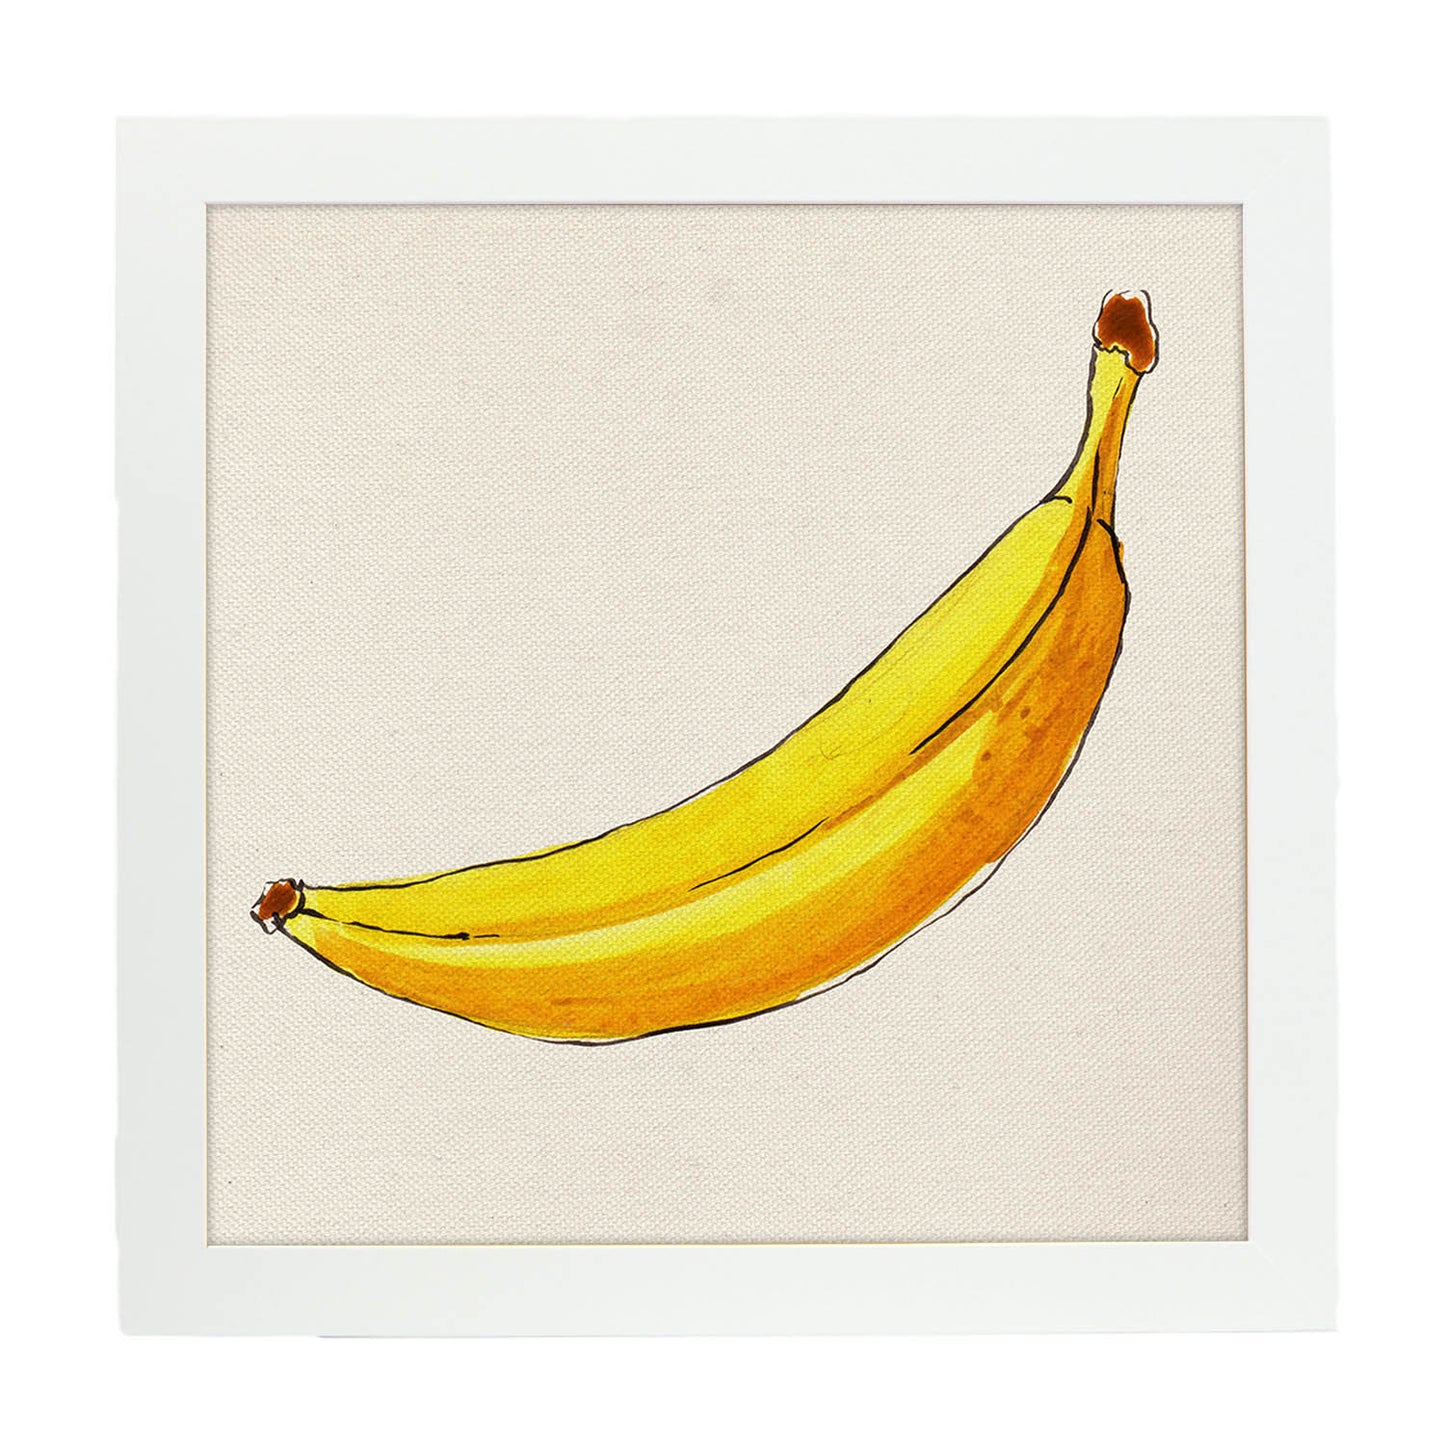 Poster cuadrado de Banana solitaria. Lámina de frutas y verduras de forma cuadrada, ilustrada con dibujos a color.-Artwork-Nacnic-20x20 cm-Marco Blanco-Nacnic Estudio SL